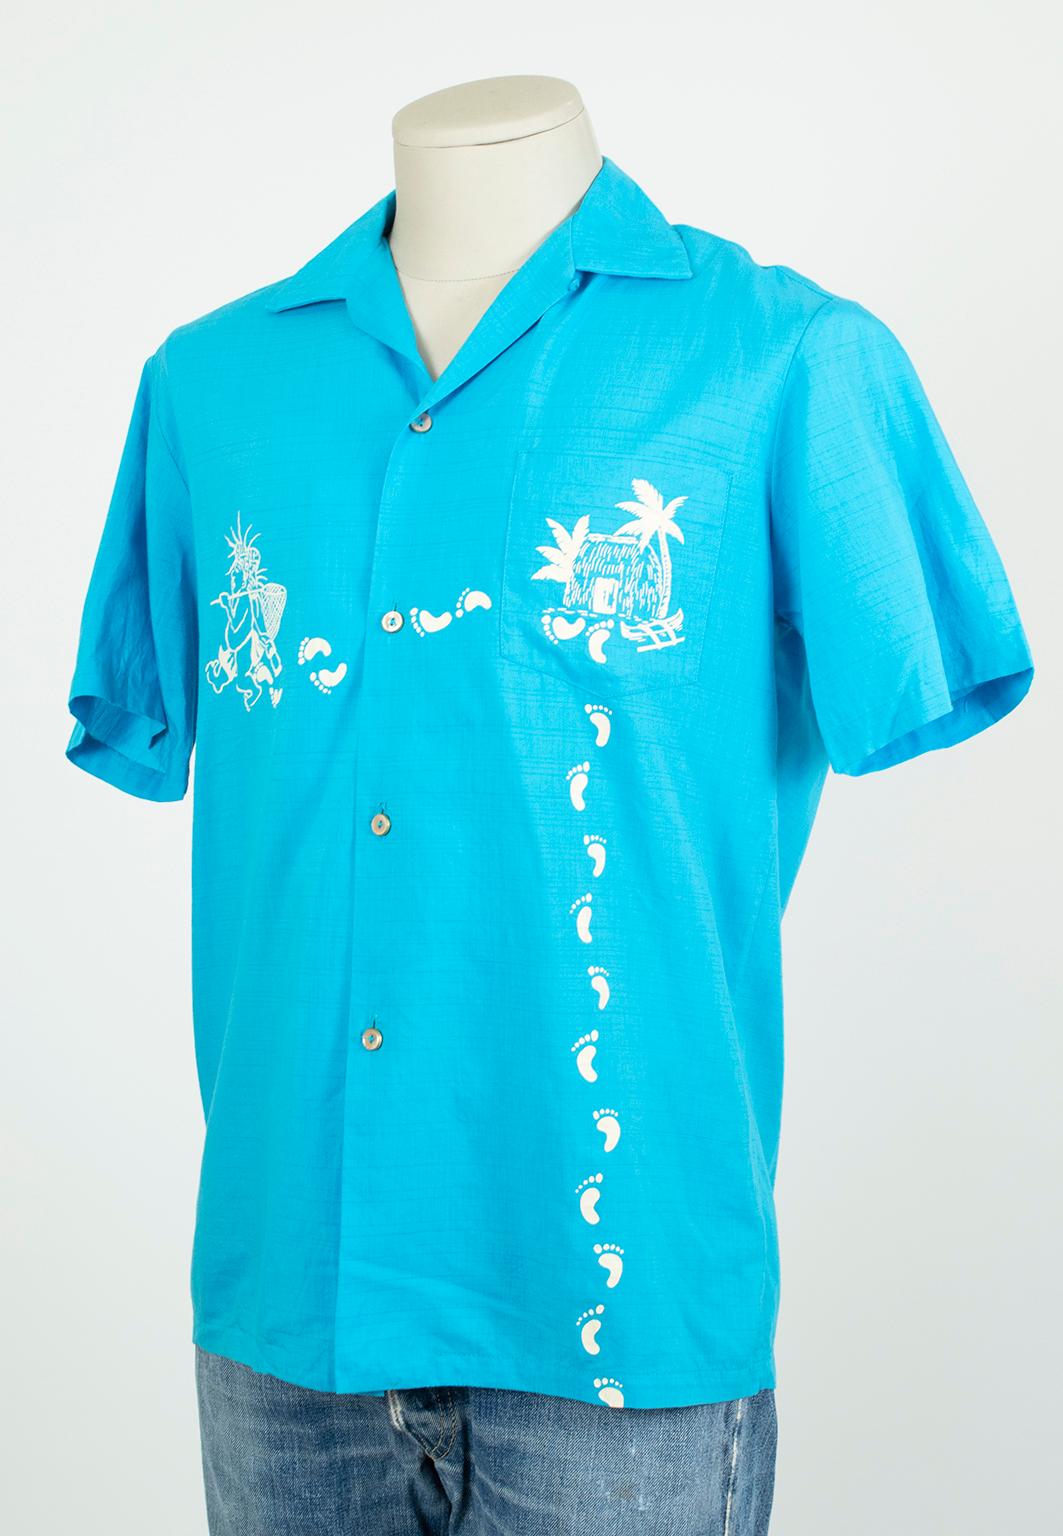 Männer Iolani Sportbekleidung bemalt Türkis Hawaii Footprint Shirt-M, 1950er Jahre (Blau) im Angebot